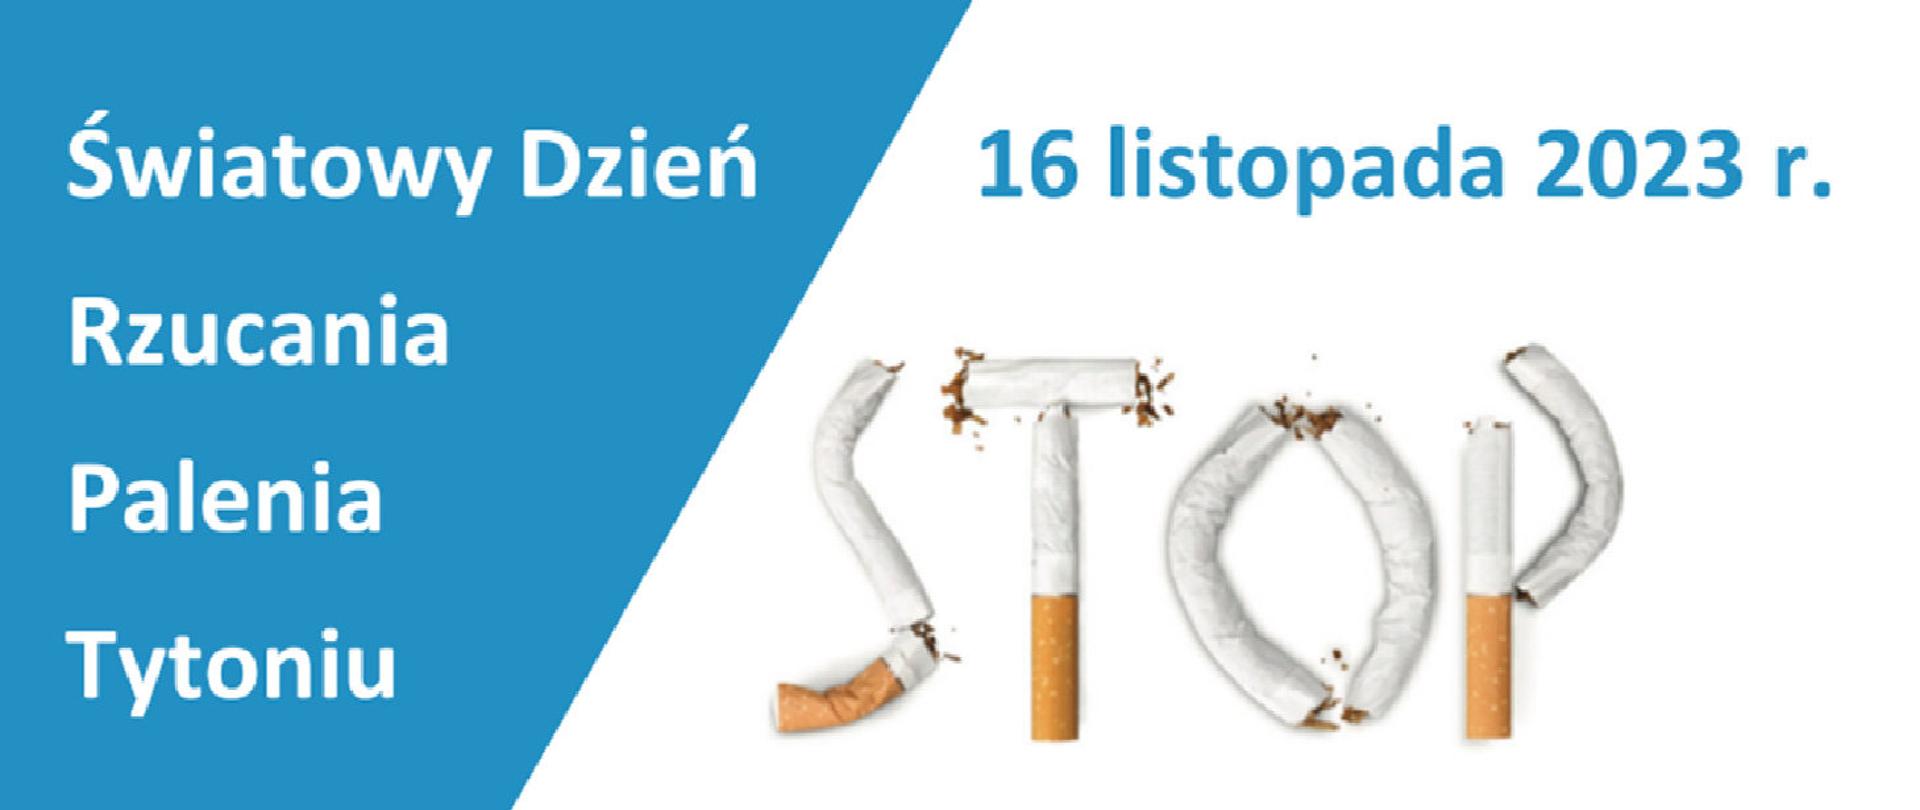 Logo z napisem Światowy Dzień Rzucania Palenia Tytoniu 16 listopada 2023 r.